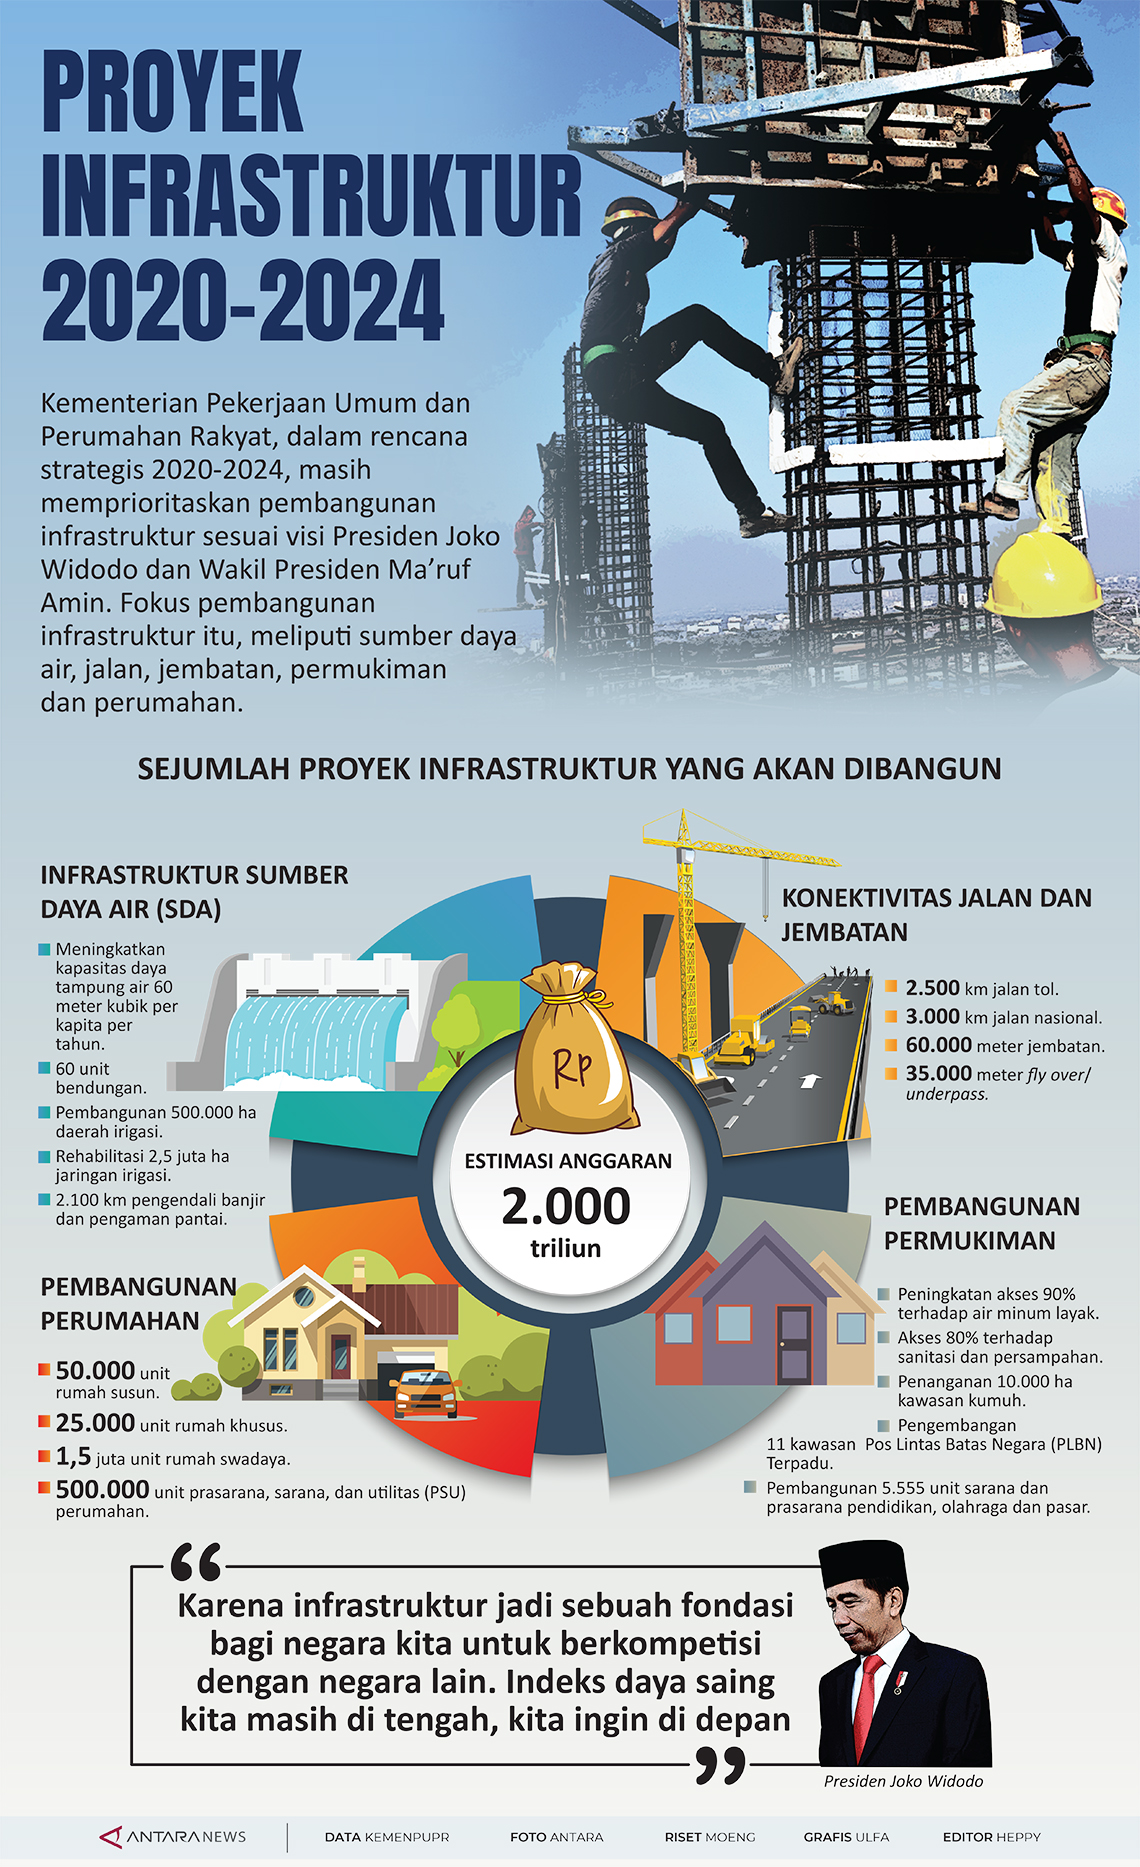 Proyek infrastruktur 2020 - 2024